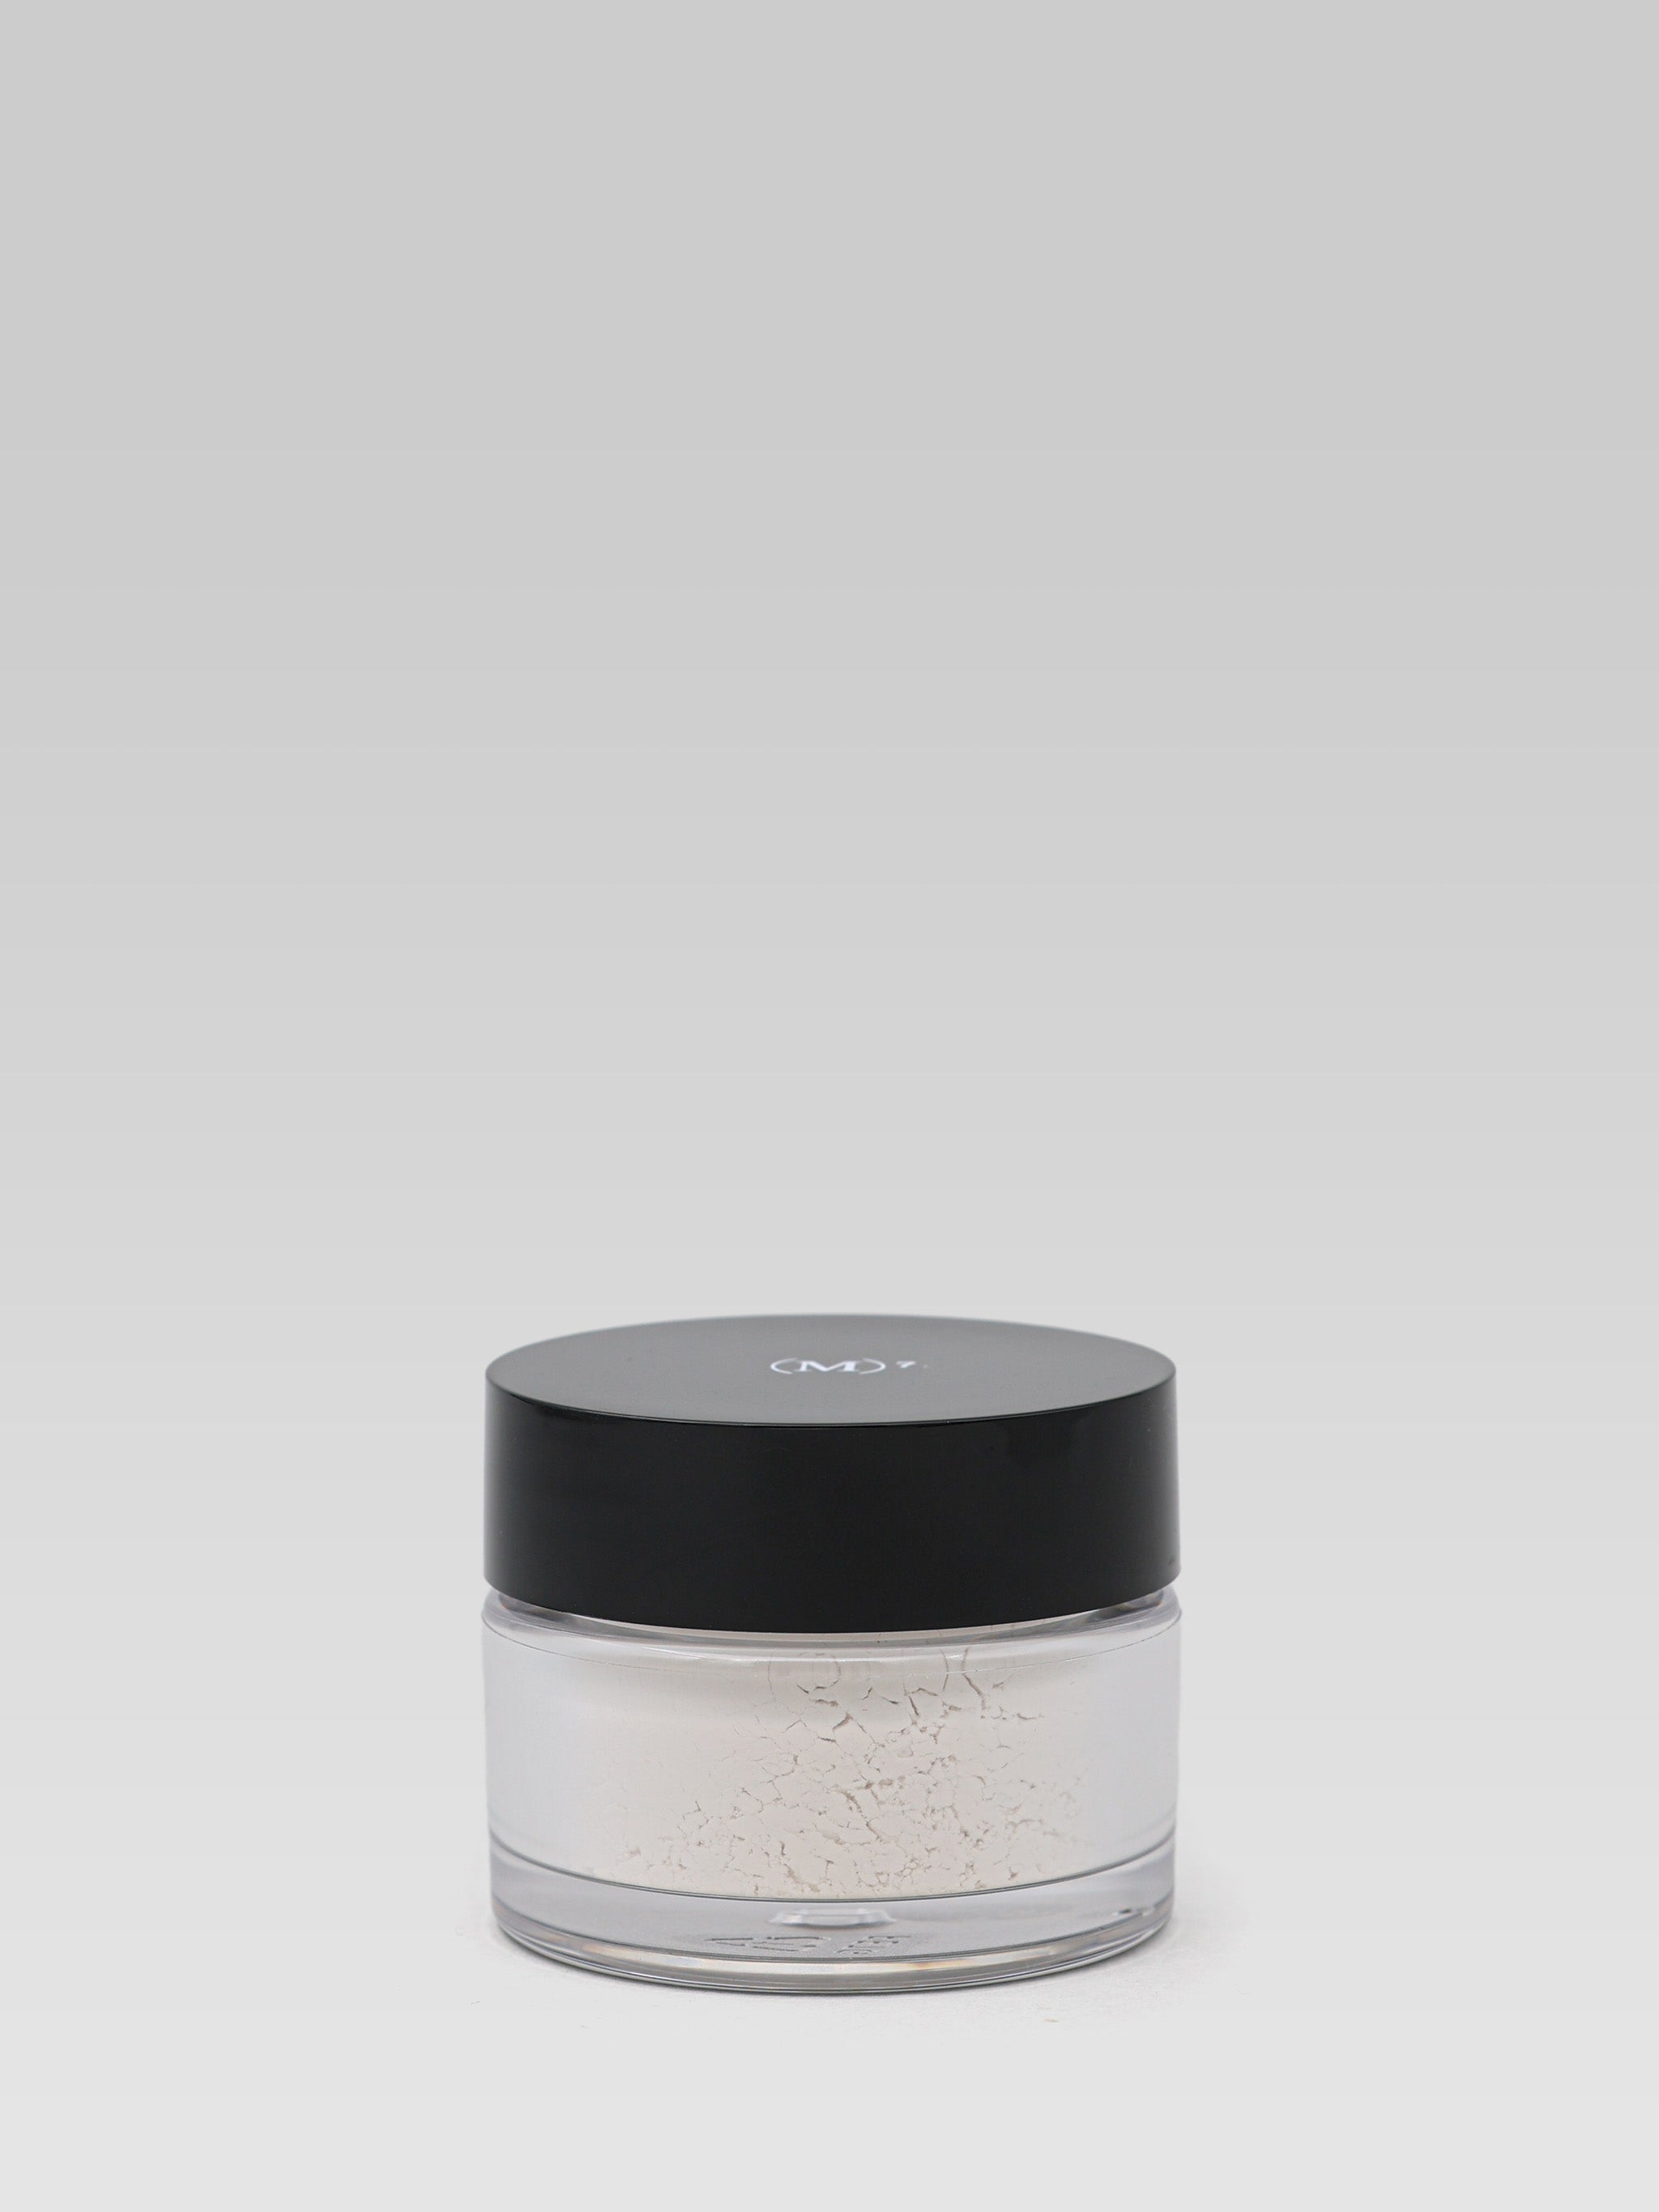 (M)ANASI 7 Silk Finish Powder Translucent product shot 